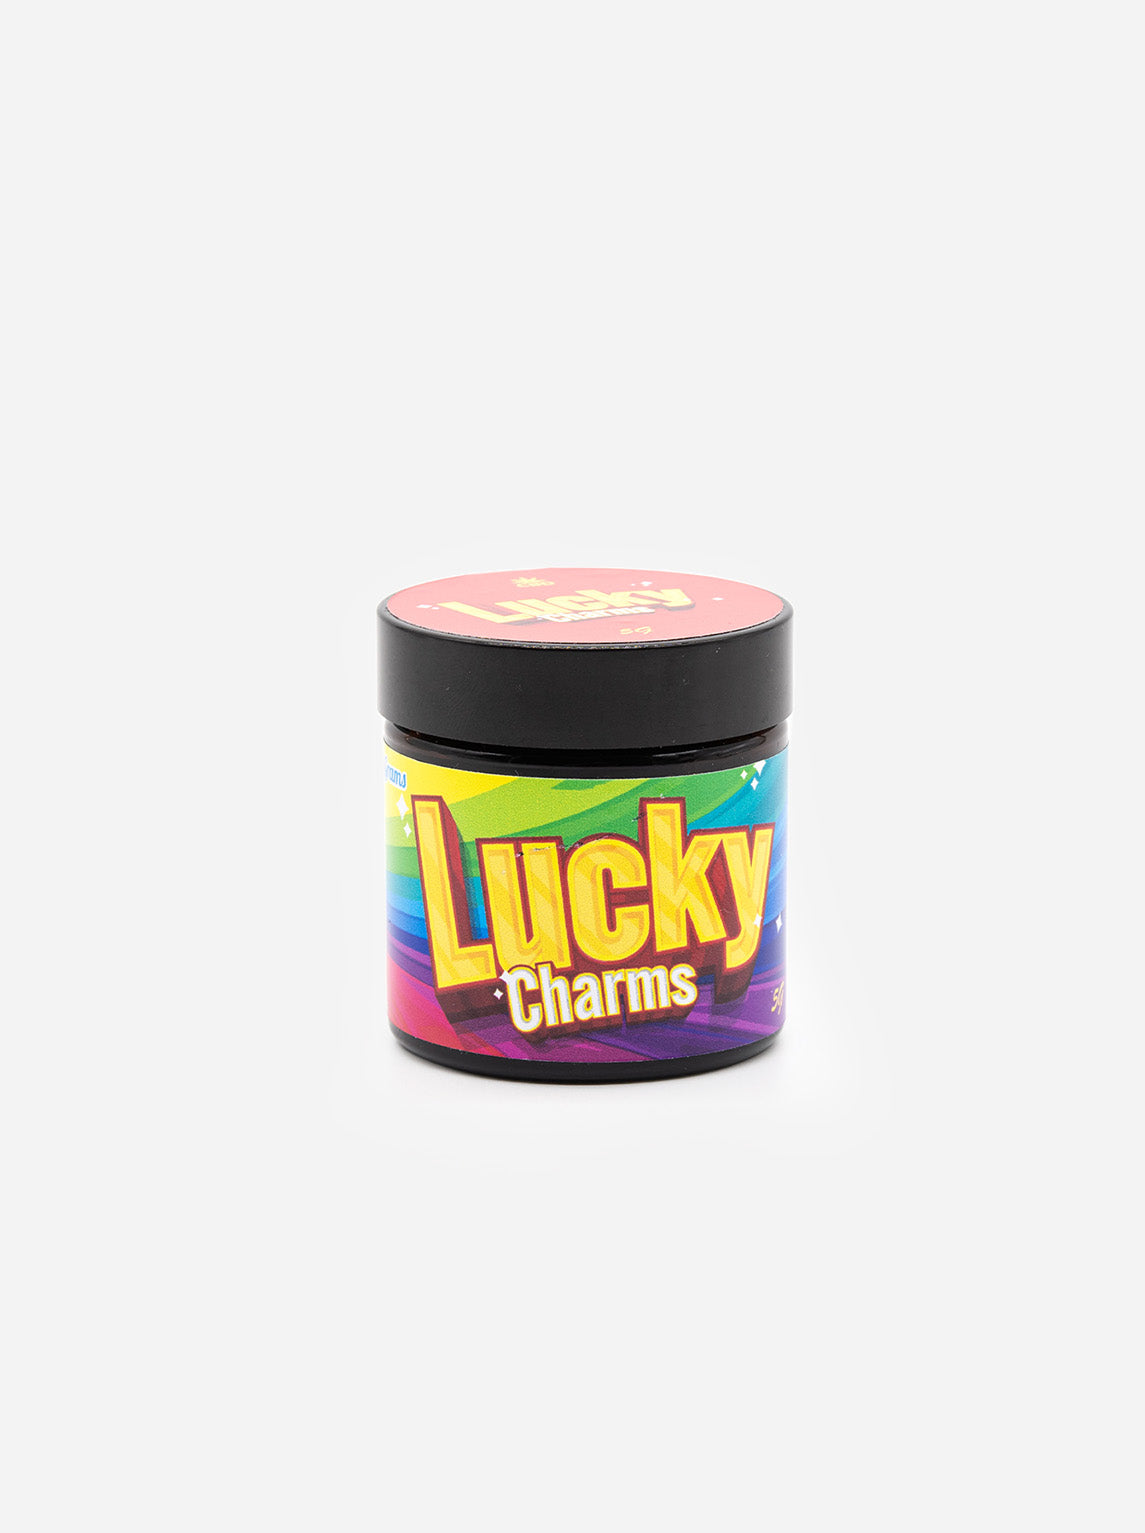 Lucky Charms | Premium CBD Aroma flower